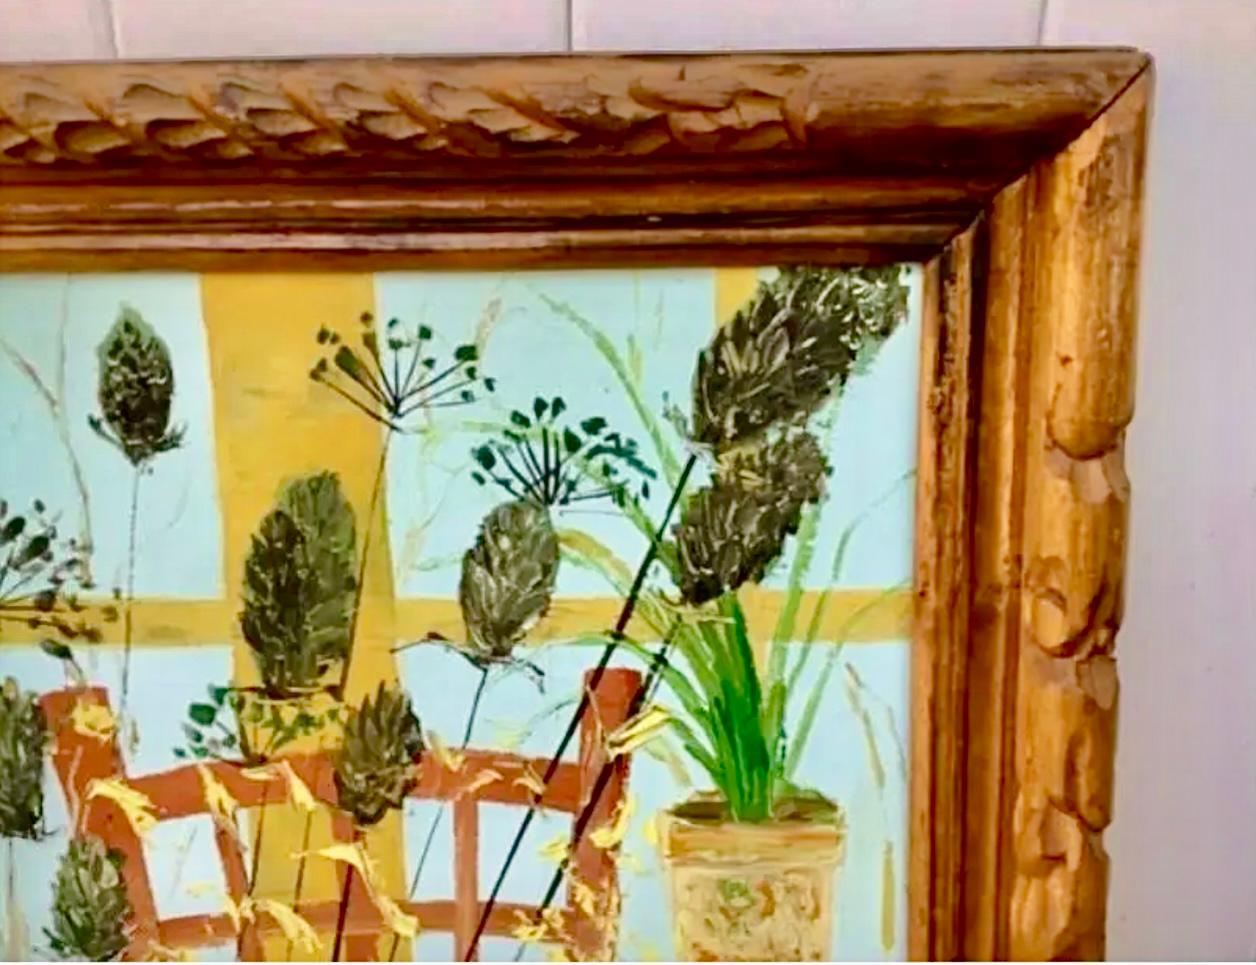 Magnifique peinture à l'huile sur toile surdimensionnée du milieu du siècle. La peinture représente des fleurs et une chaise devant une vitre. Des ors, des rouges et des verts éclatants devant la fenêtre, le tout entouré d'un cadre en bois sculpté